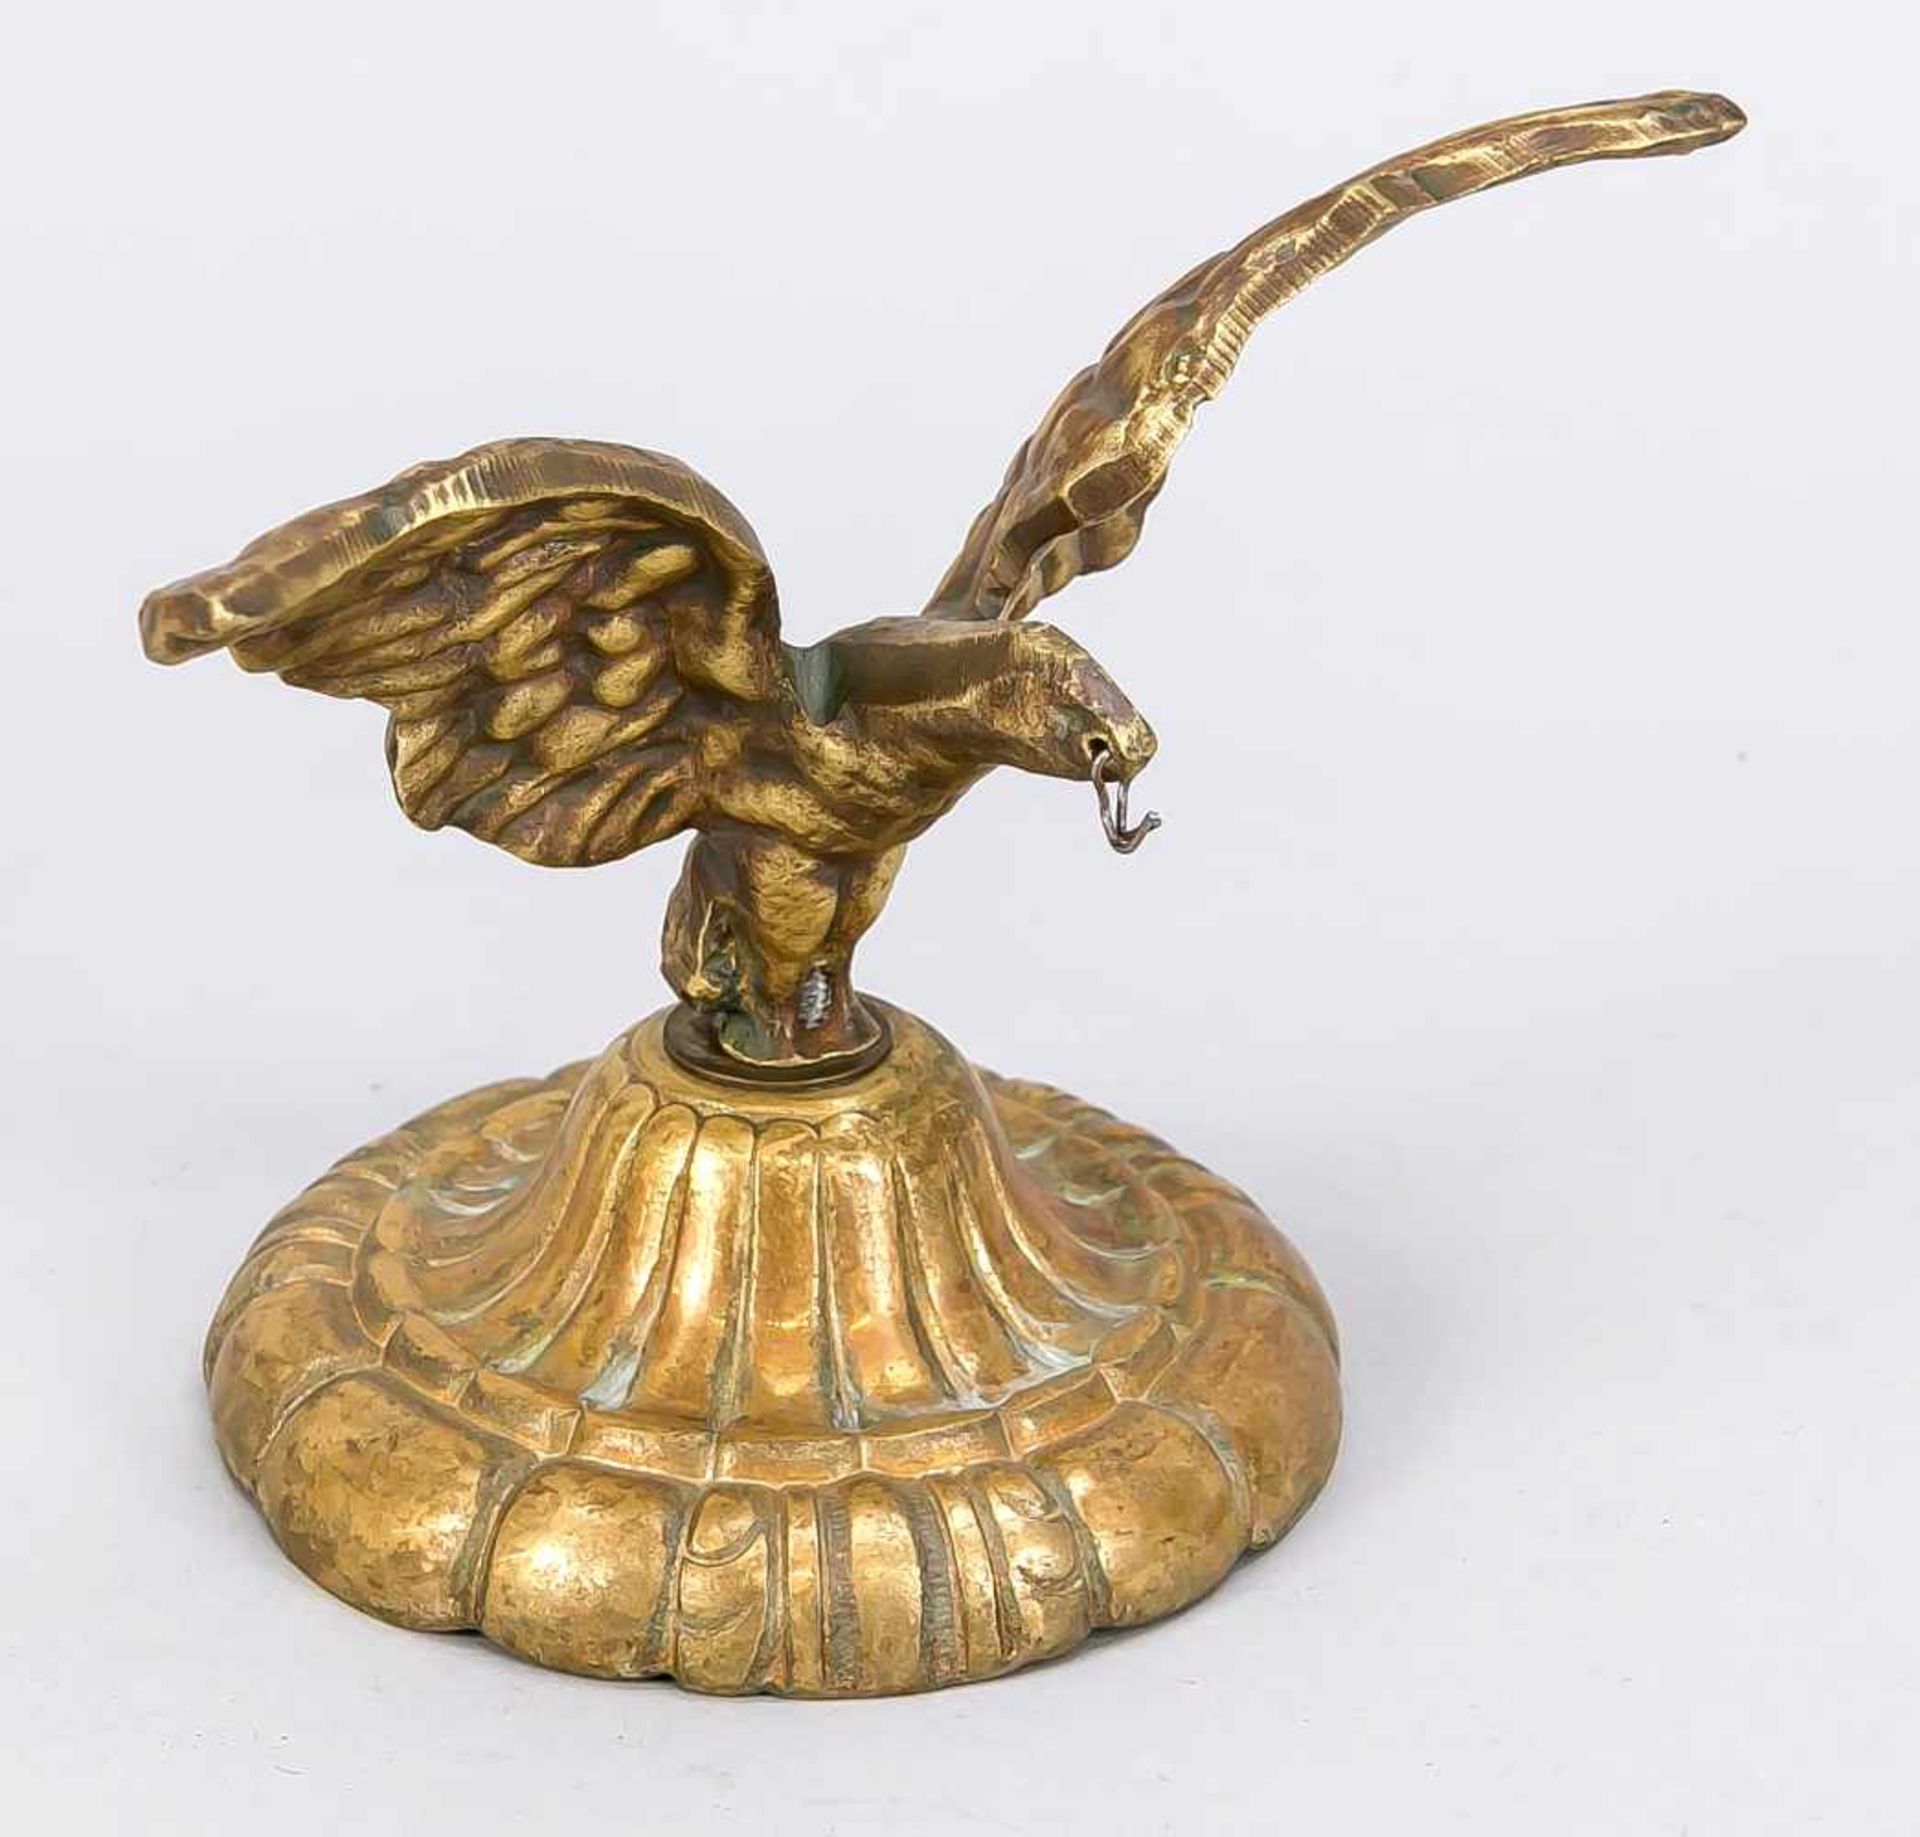 Taschenuhrendisplay, Ende 19. Jh., Bronze. Adler mit ausgebreiteten Schwingen auf rundem,